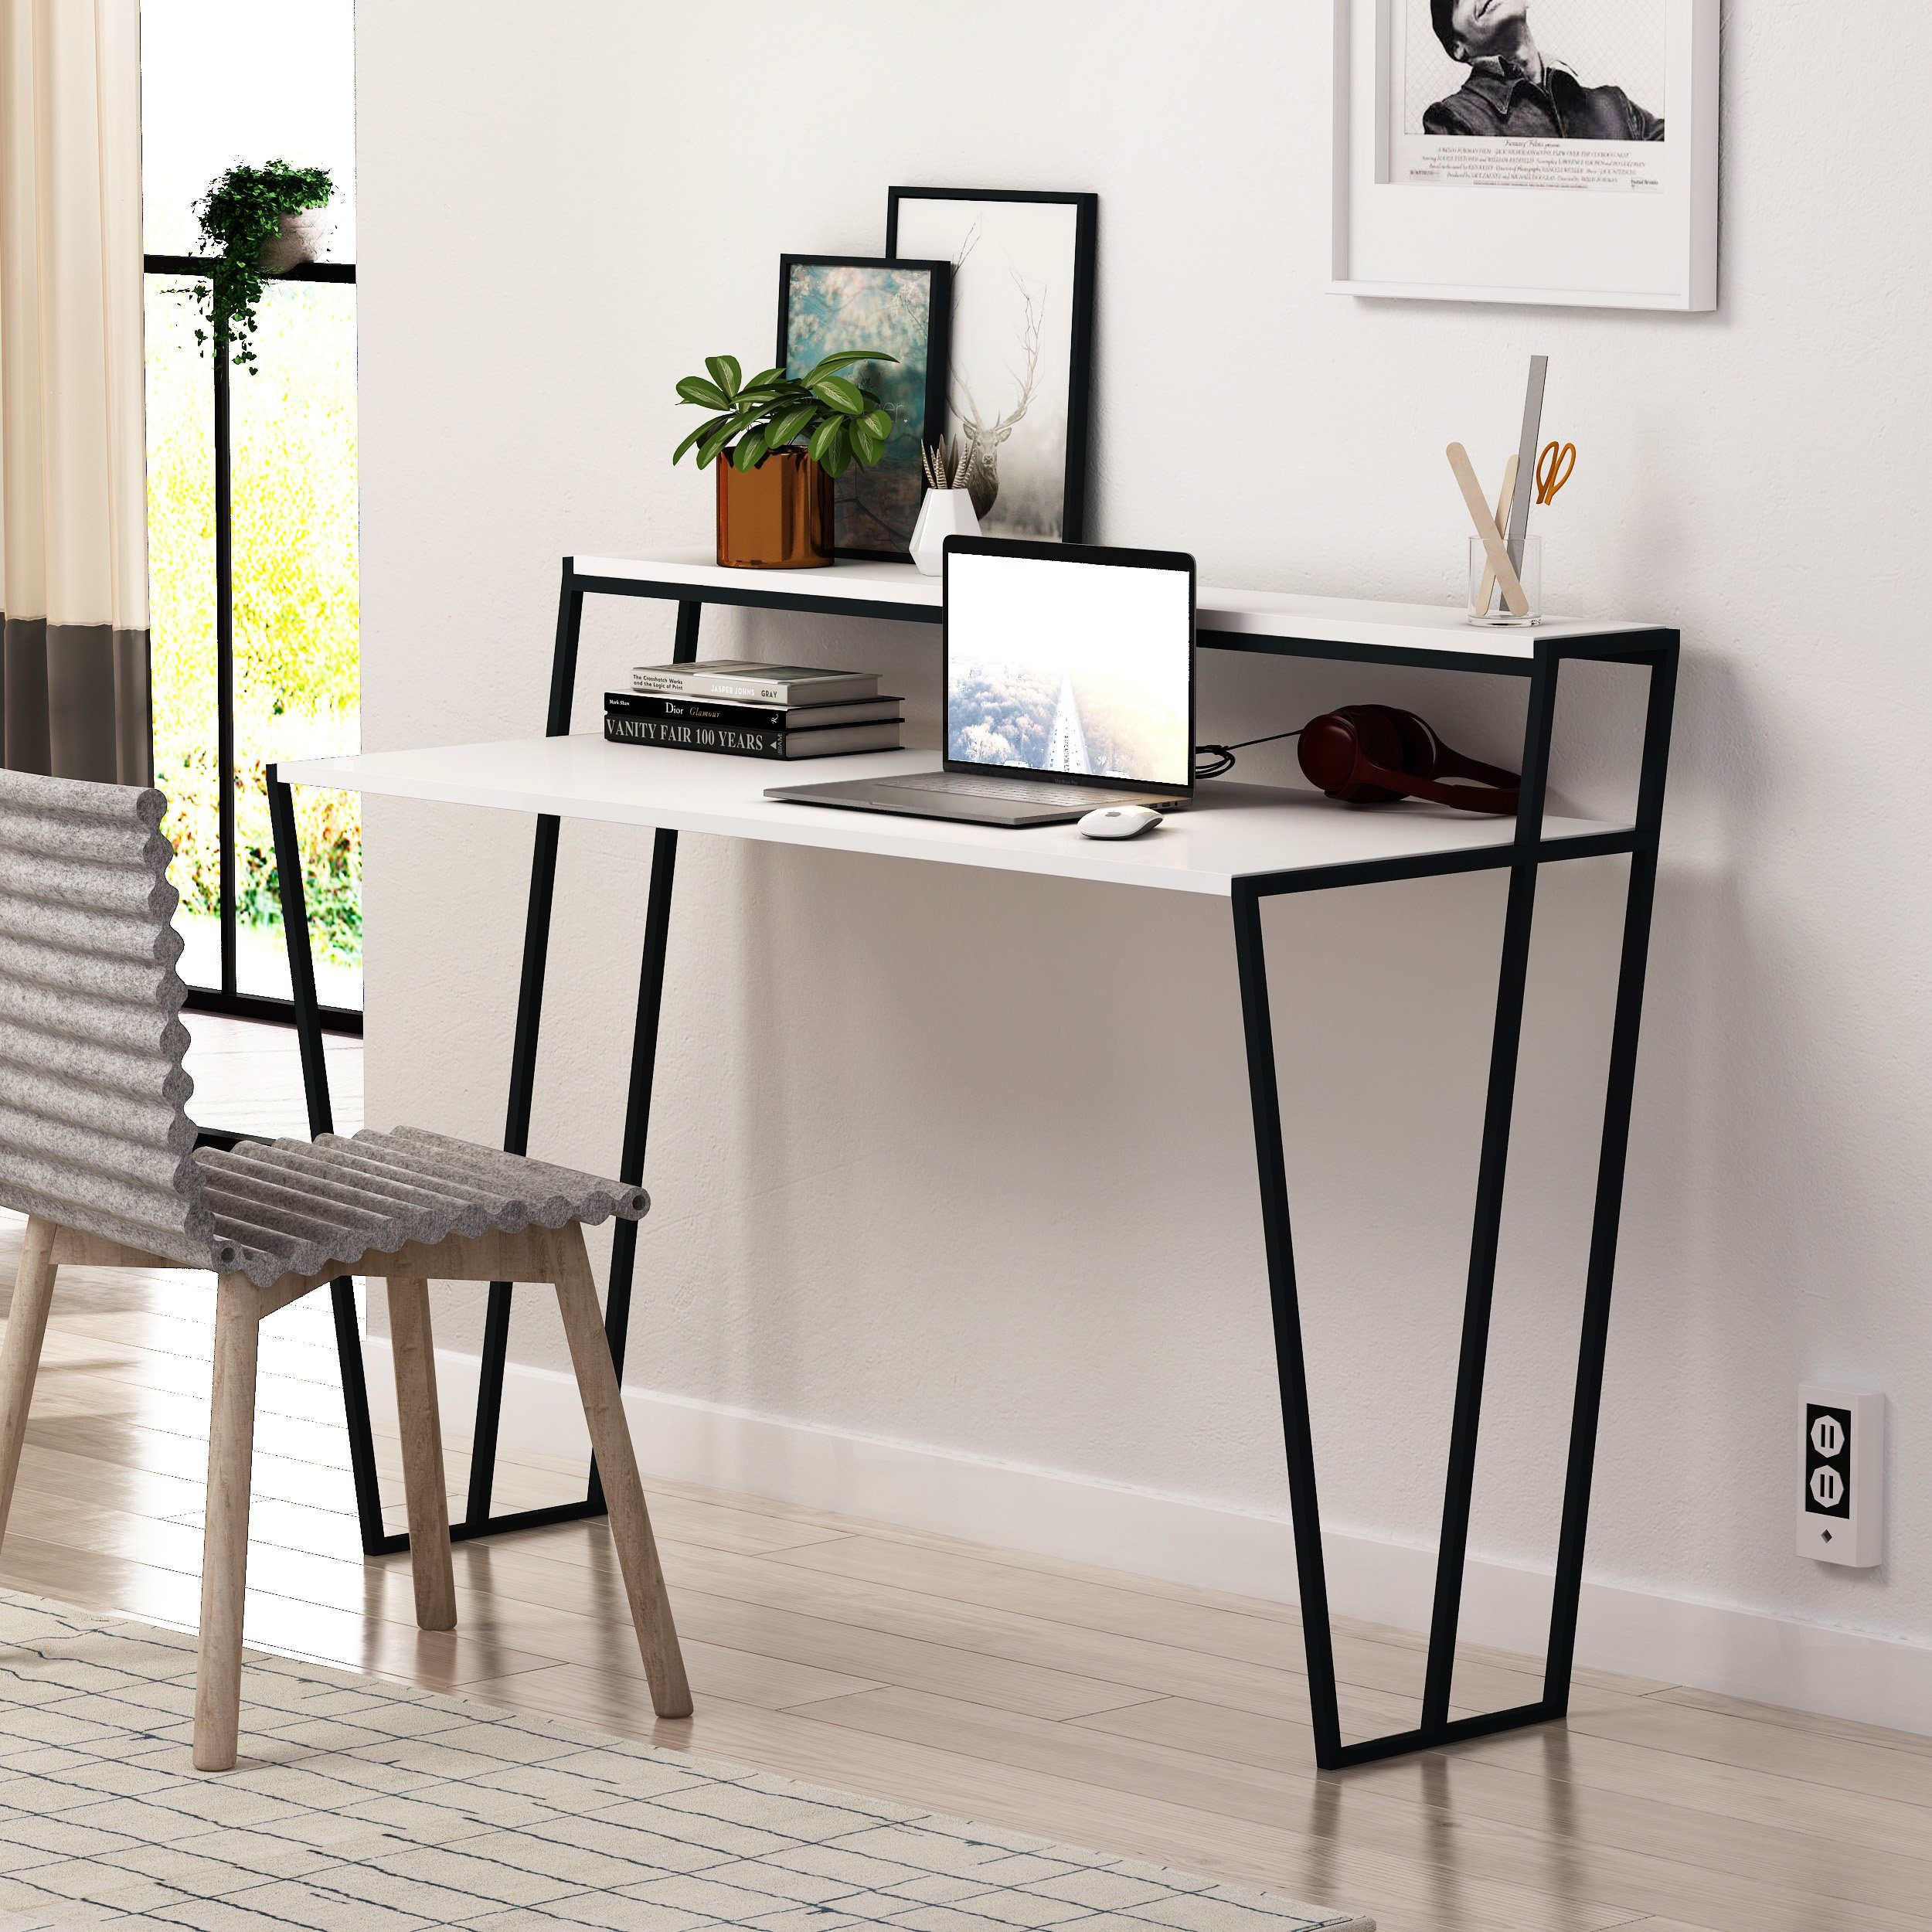 Decortie Schreibtisch Pal (1 Tisch, 1 Tisch), Moderner Schreibtisch mit Monitorfuß, 123 x 57,5 x 91,5 cm weiß